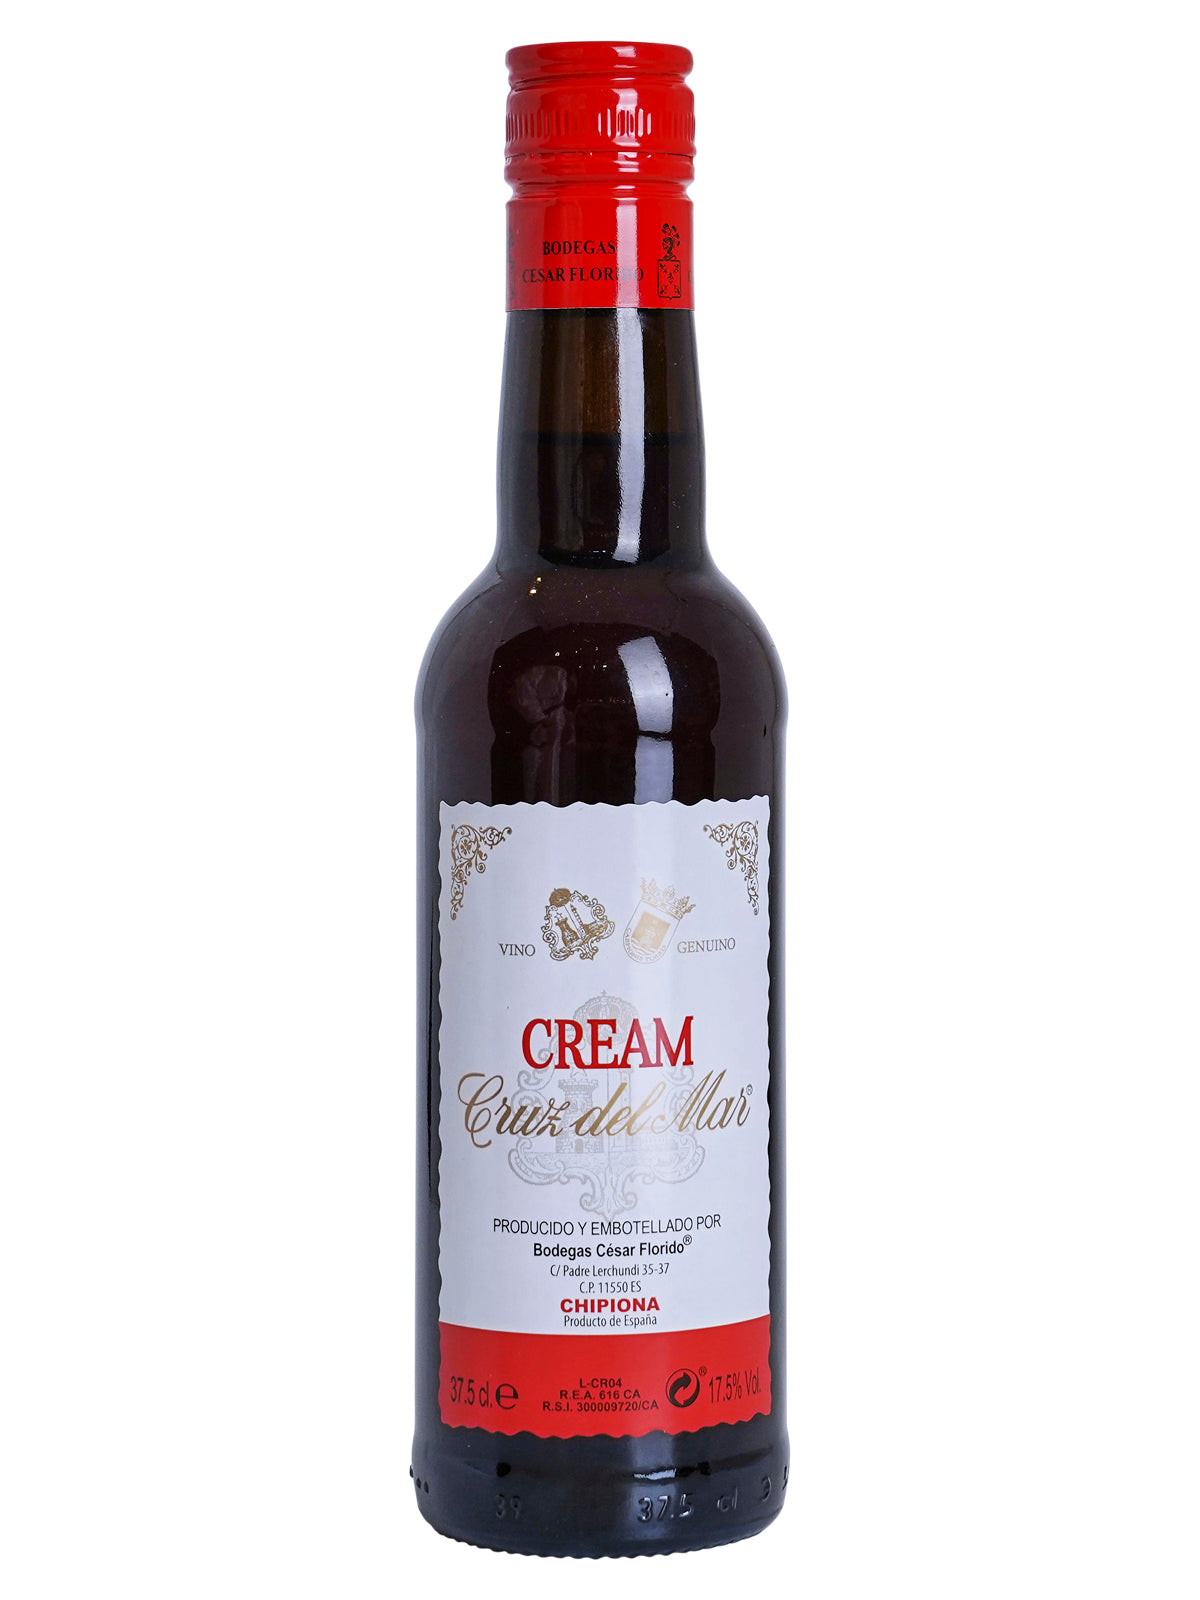 NV Bodegas Cesar Florido "Cruz del Mar" Cream Sherry (Andalucia, SP)